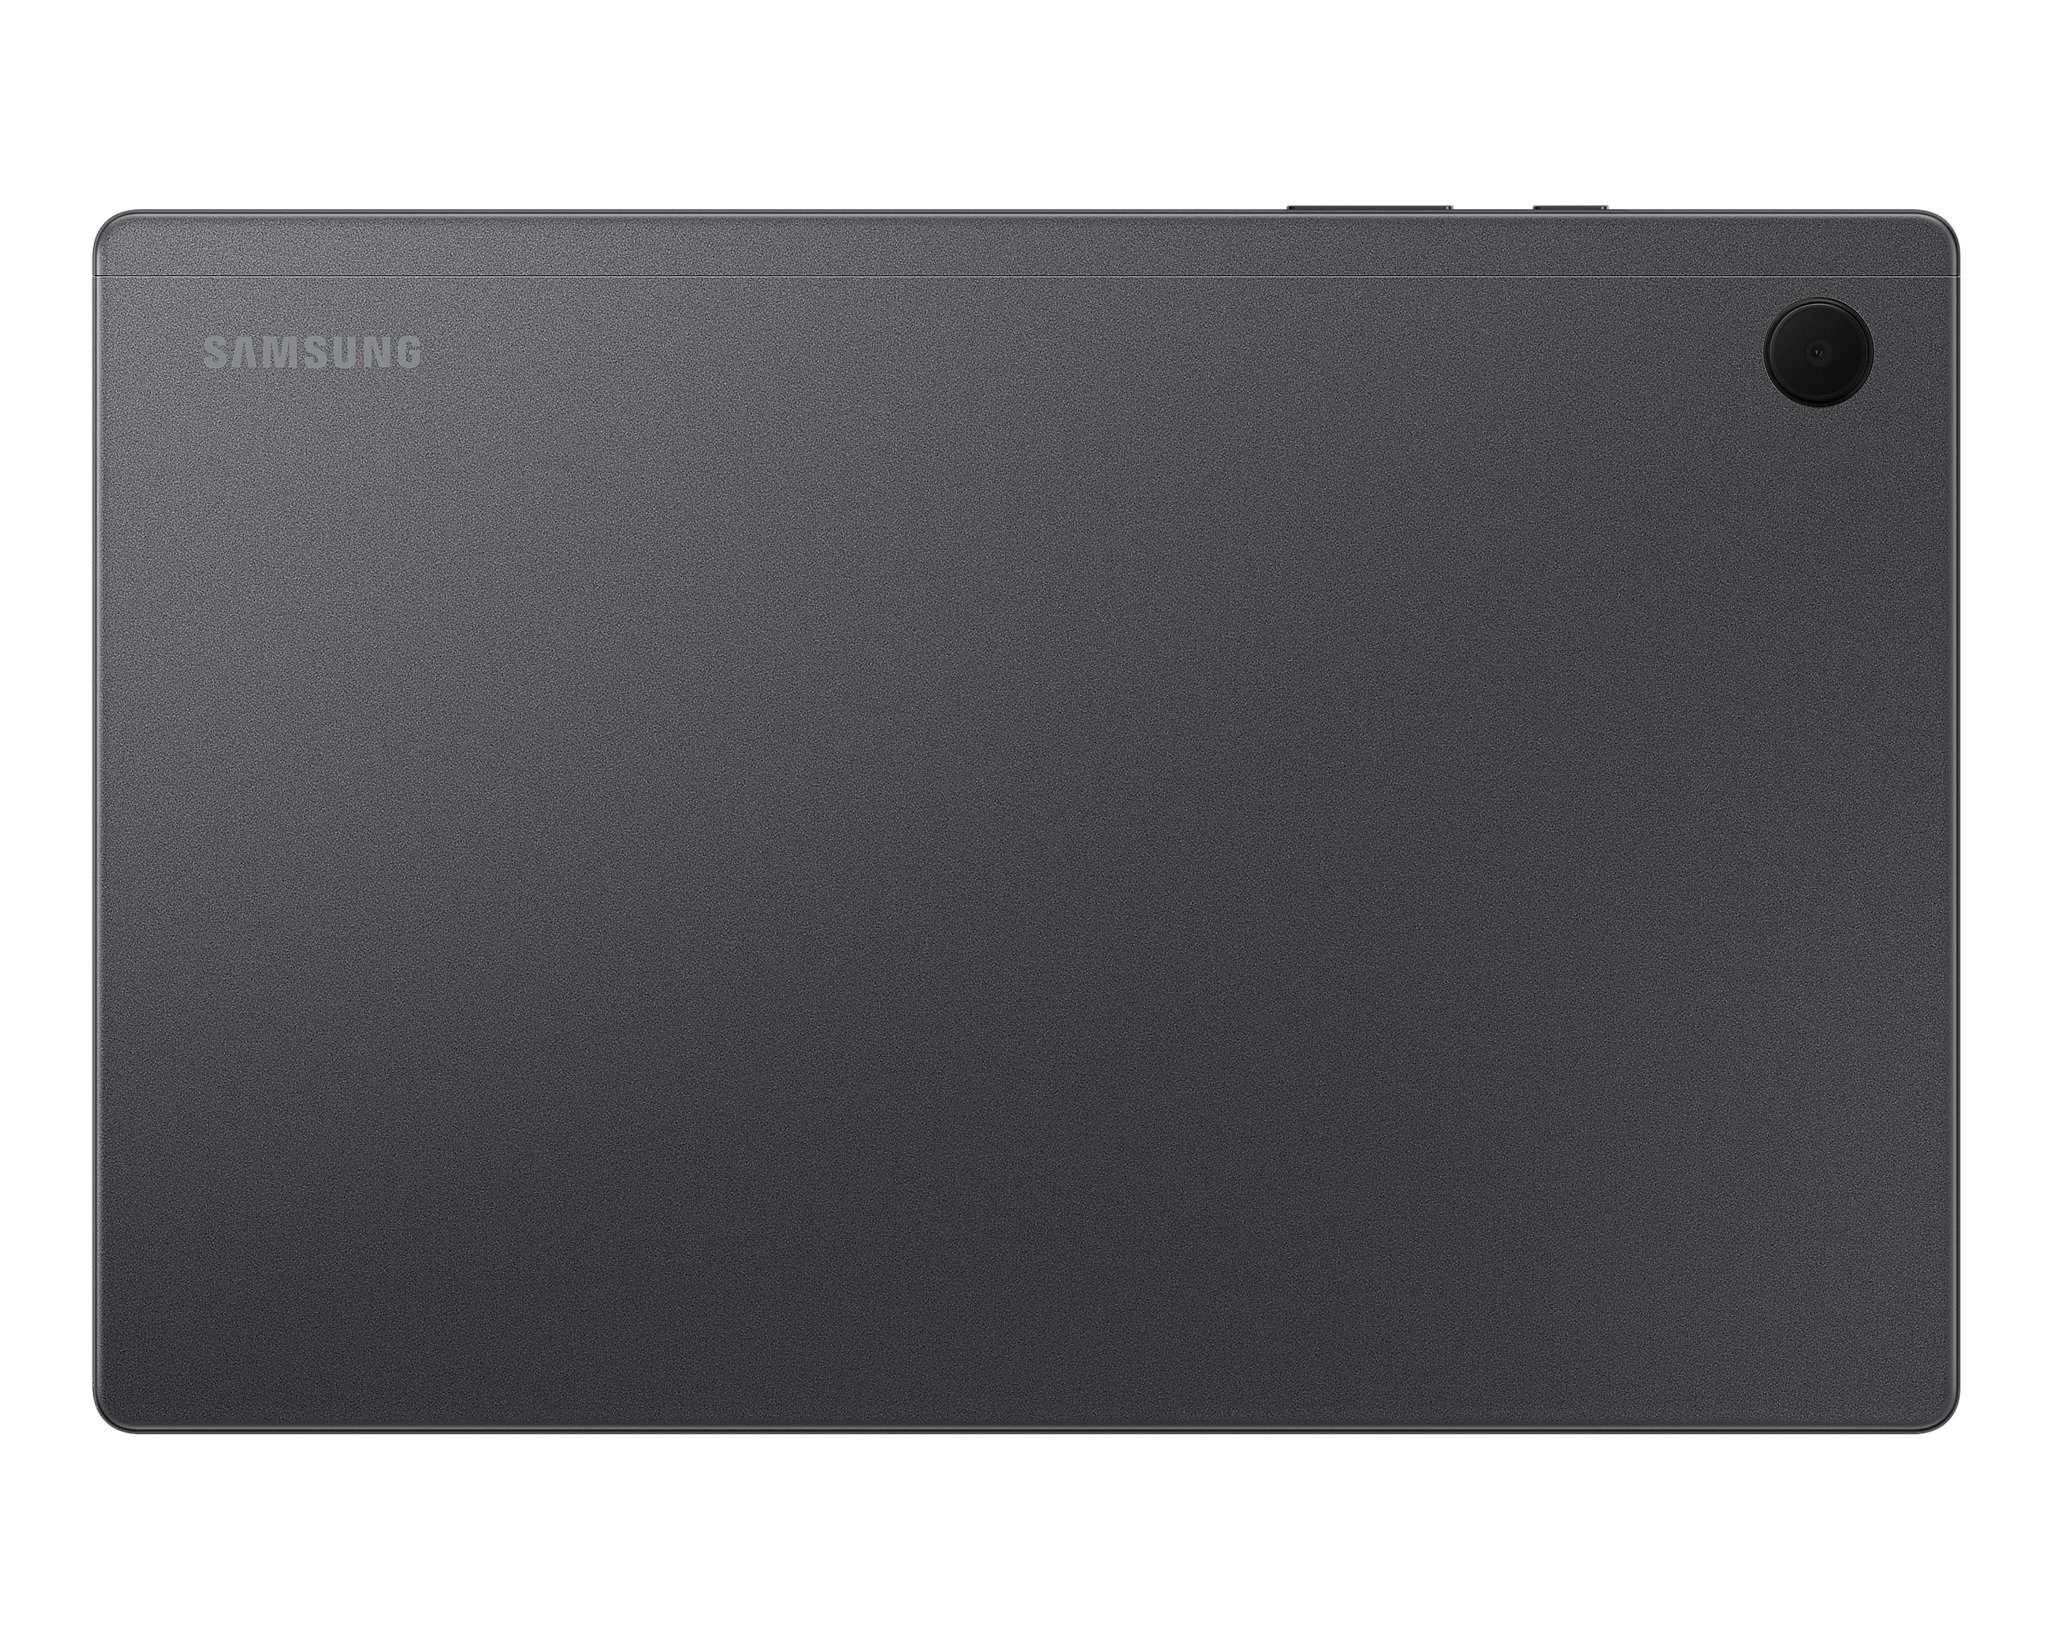 Samsung Tab A8